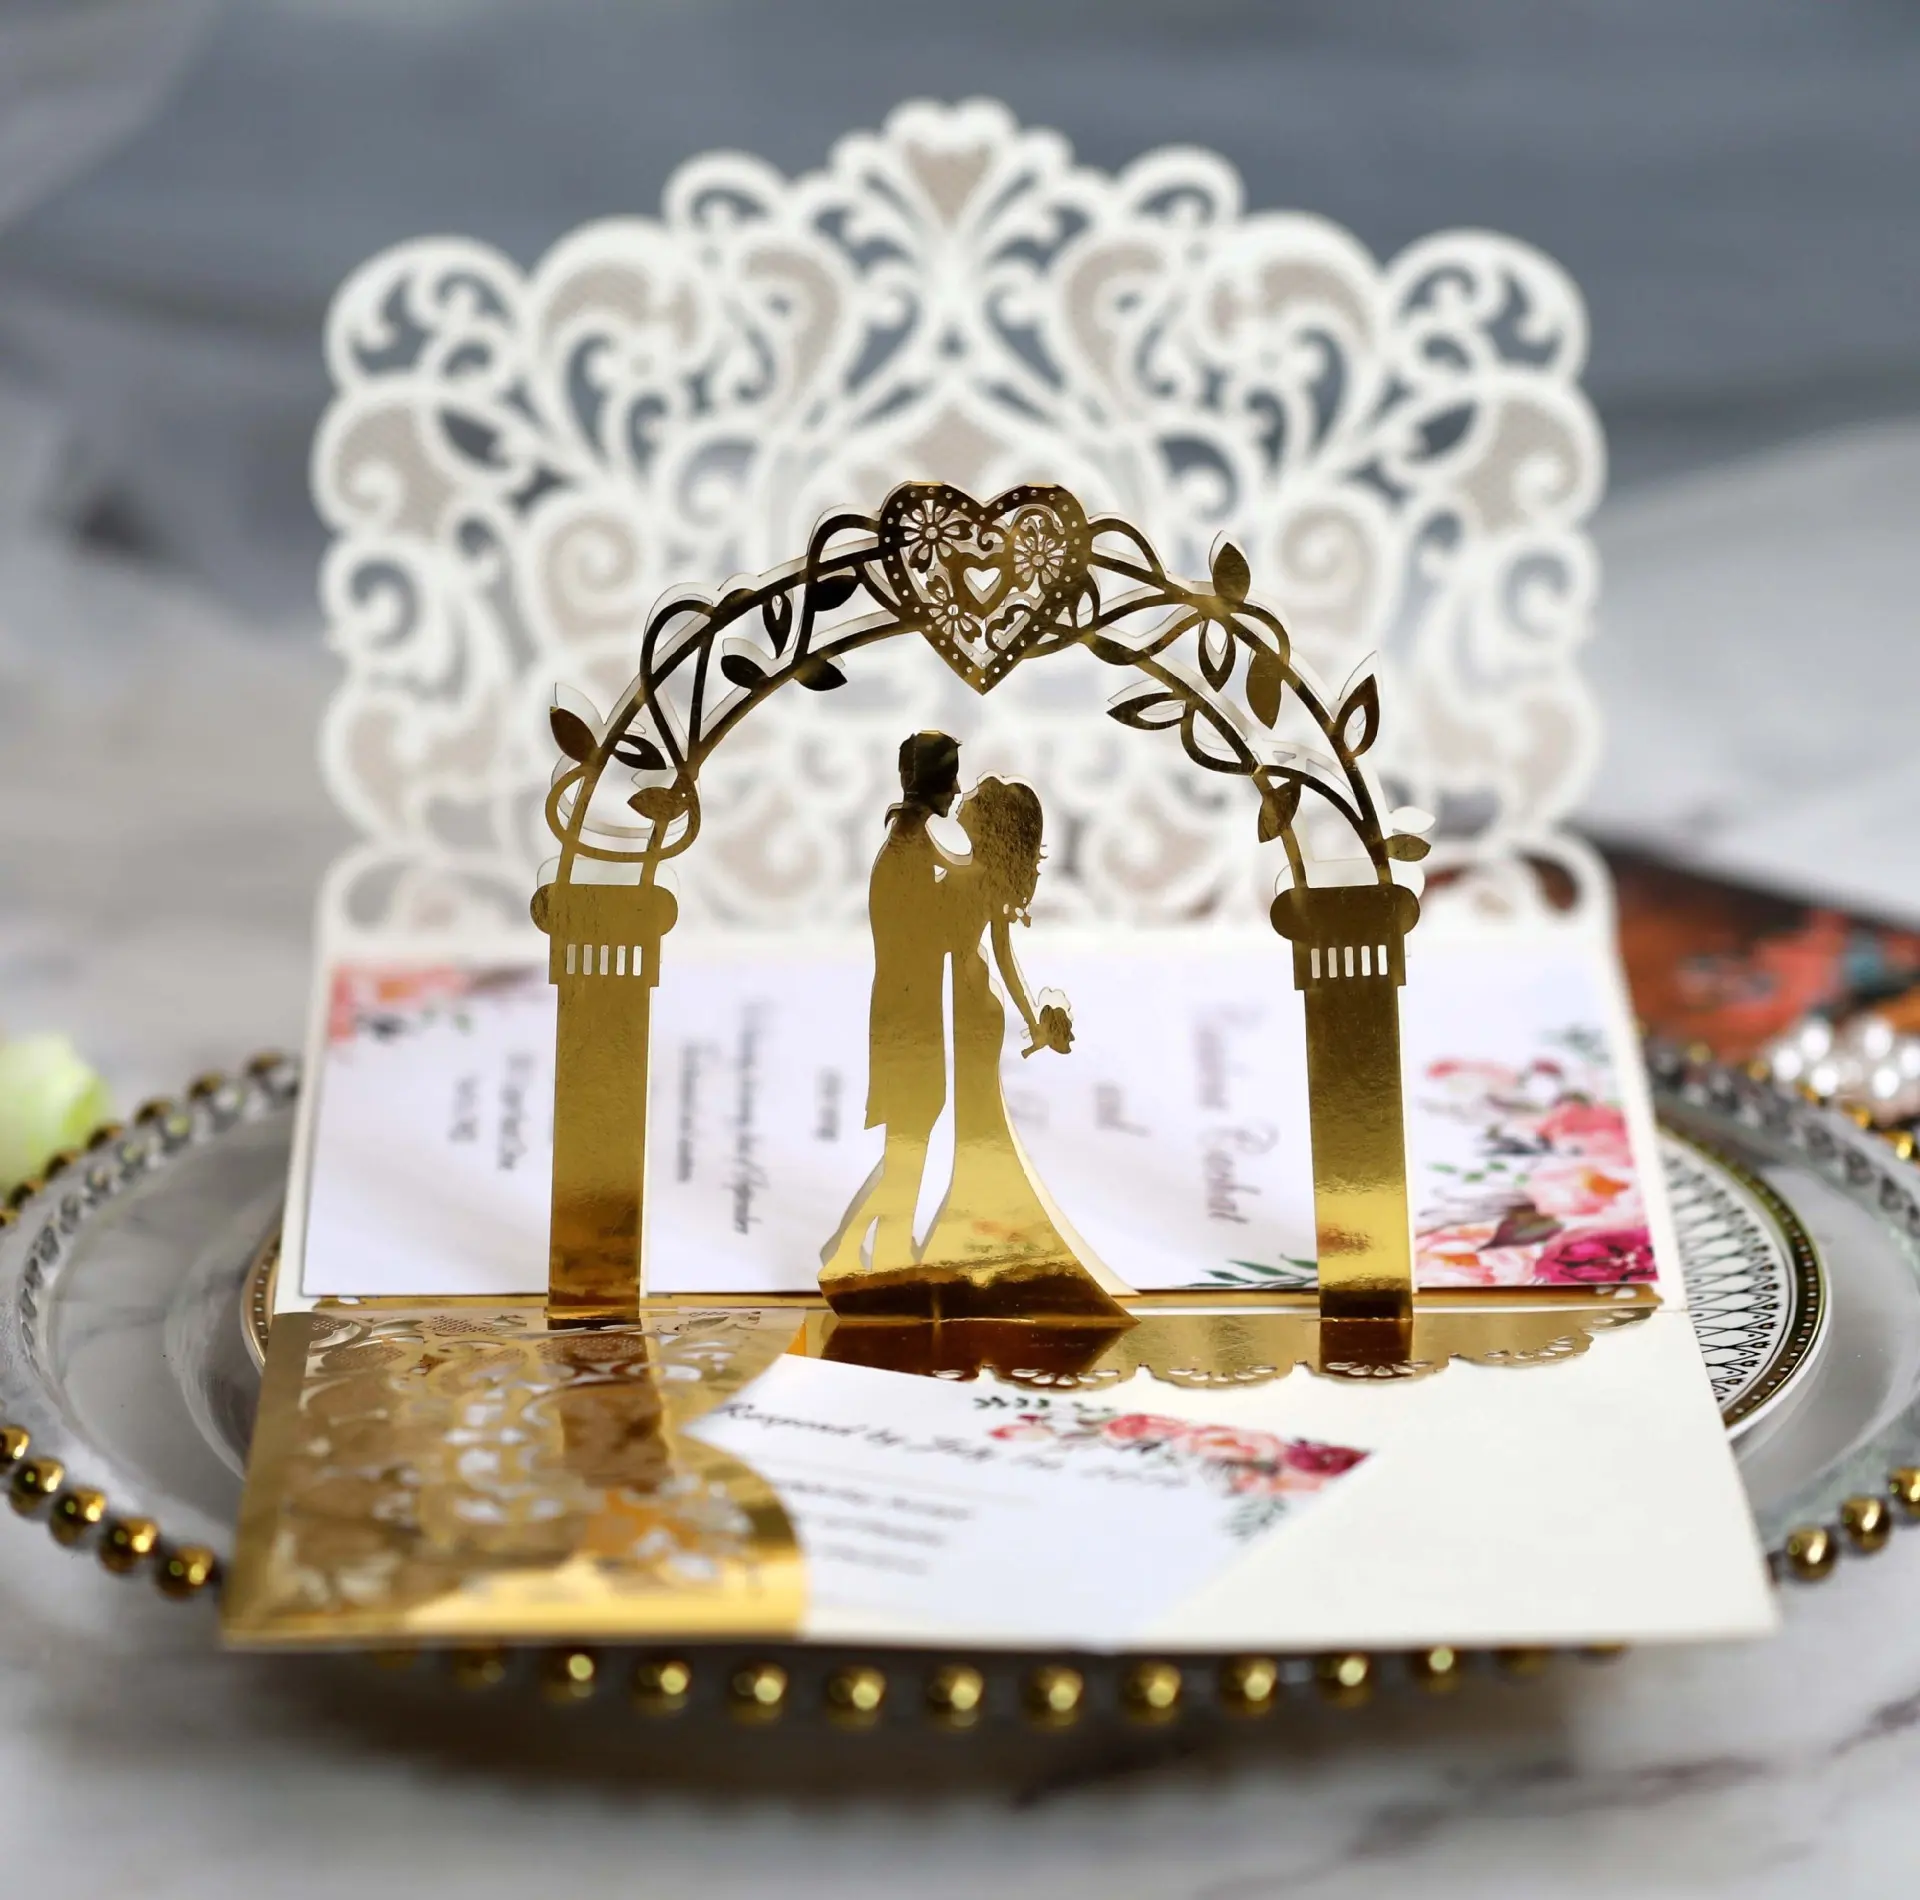 लेजर कट शादी के निमंत्रण कार्ड लिफाफे के साथ शादी के जन्मदिन के लिए सगाई ब्राइडल शावर स्नातक पार्टी